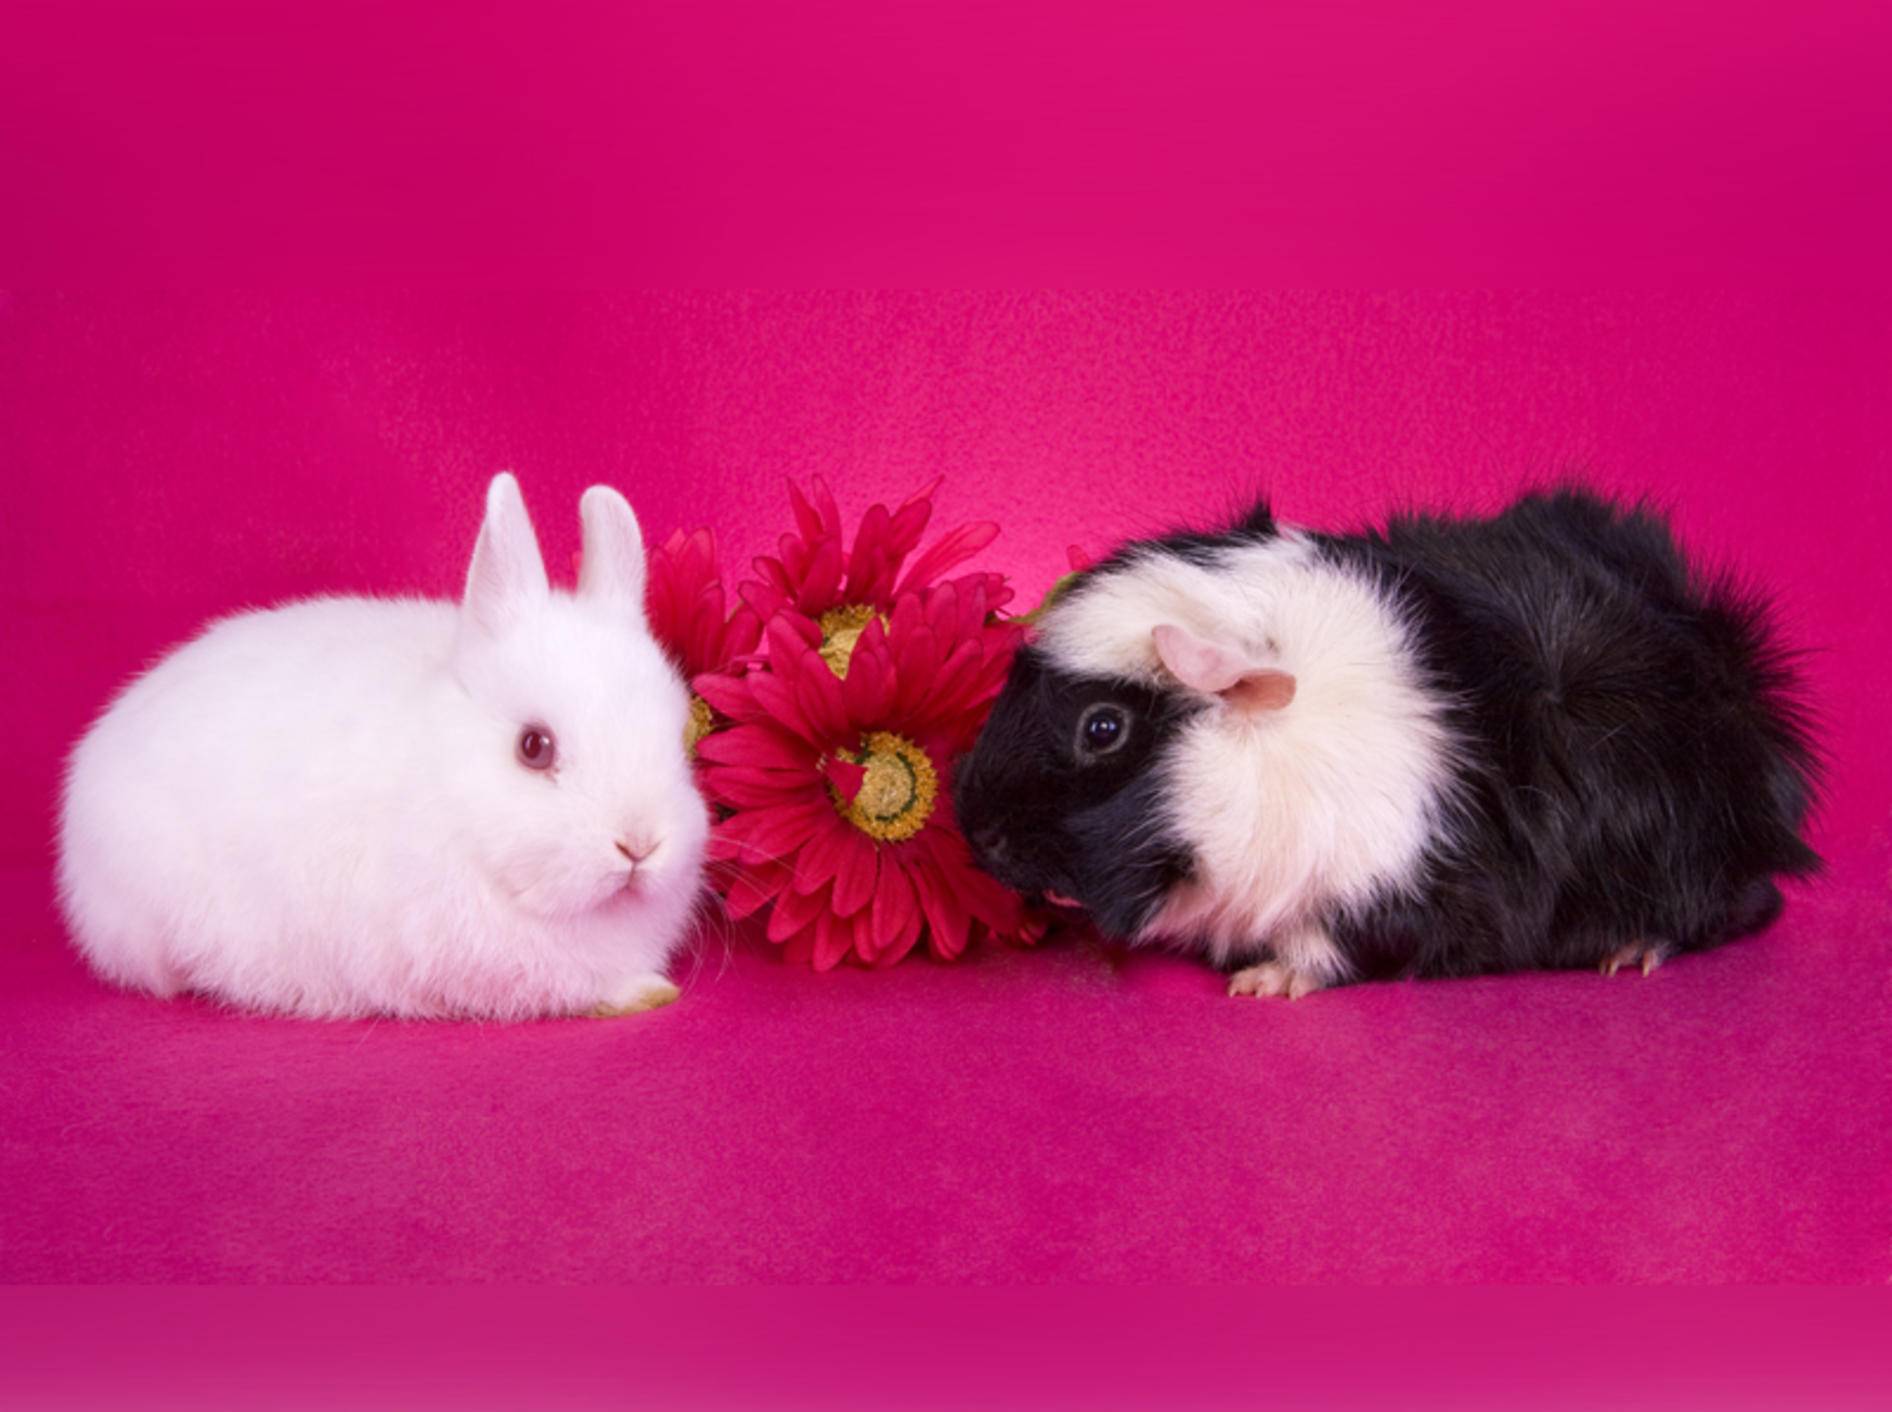 Kaninchen oder Meerschweinchen? Das ist hier die Frage ... – Shutterstock / Robynrg